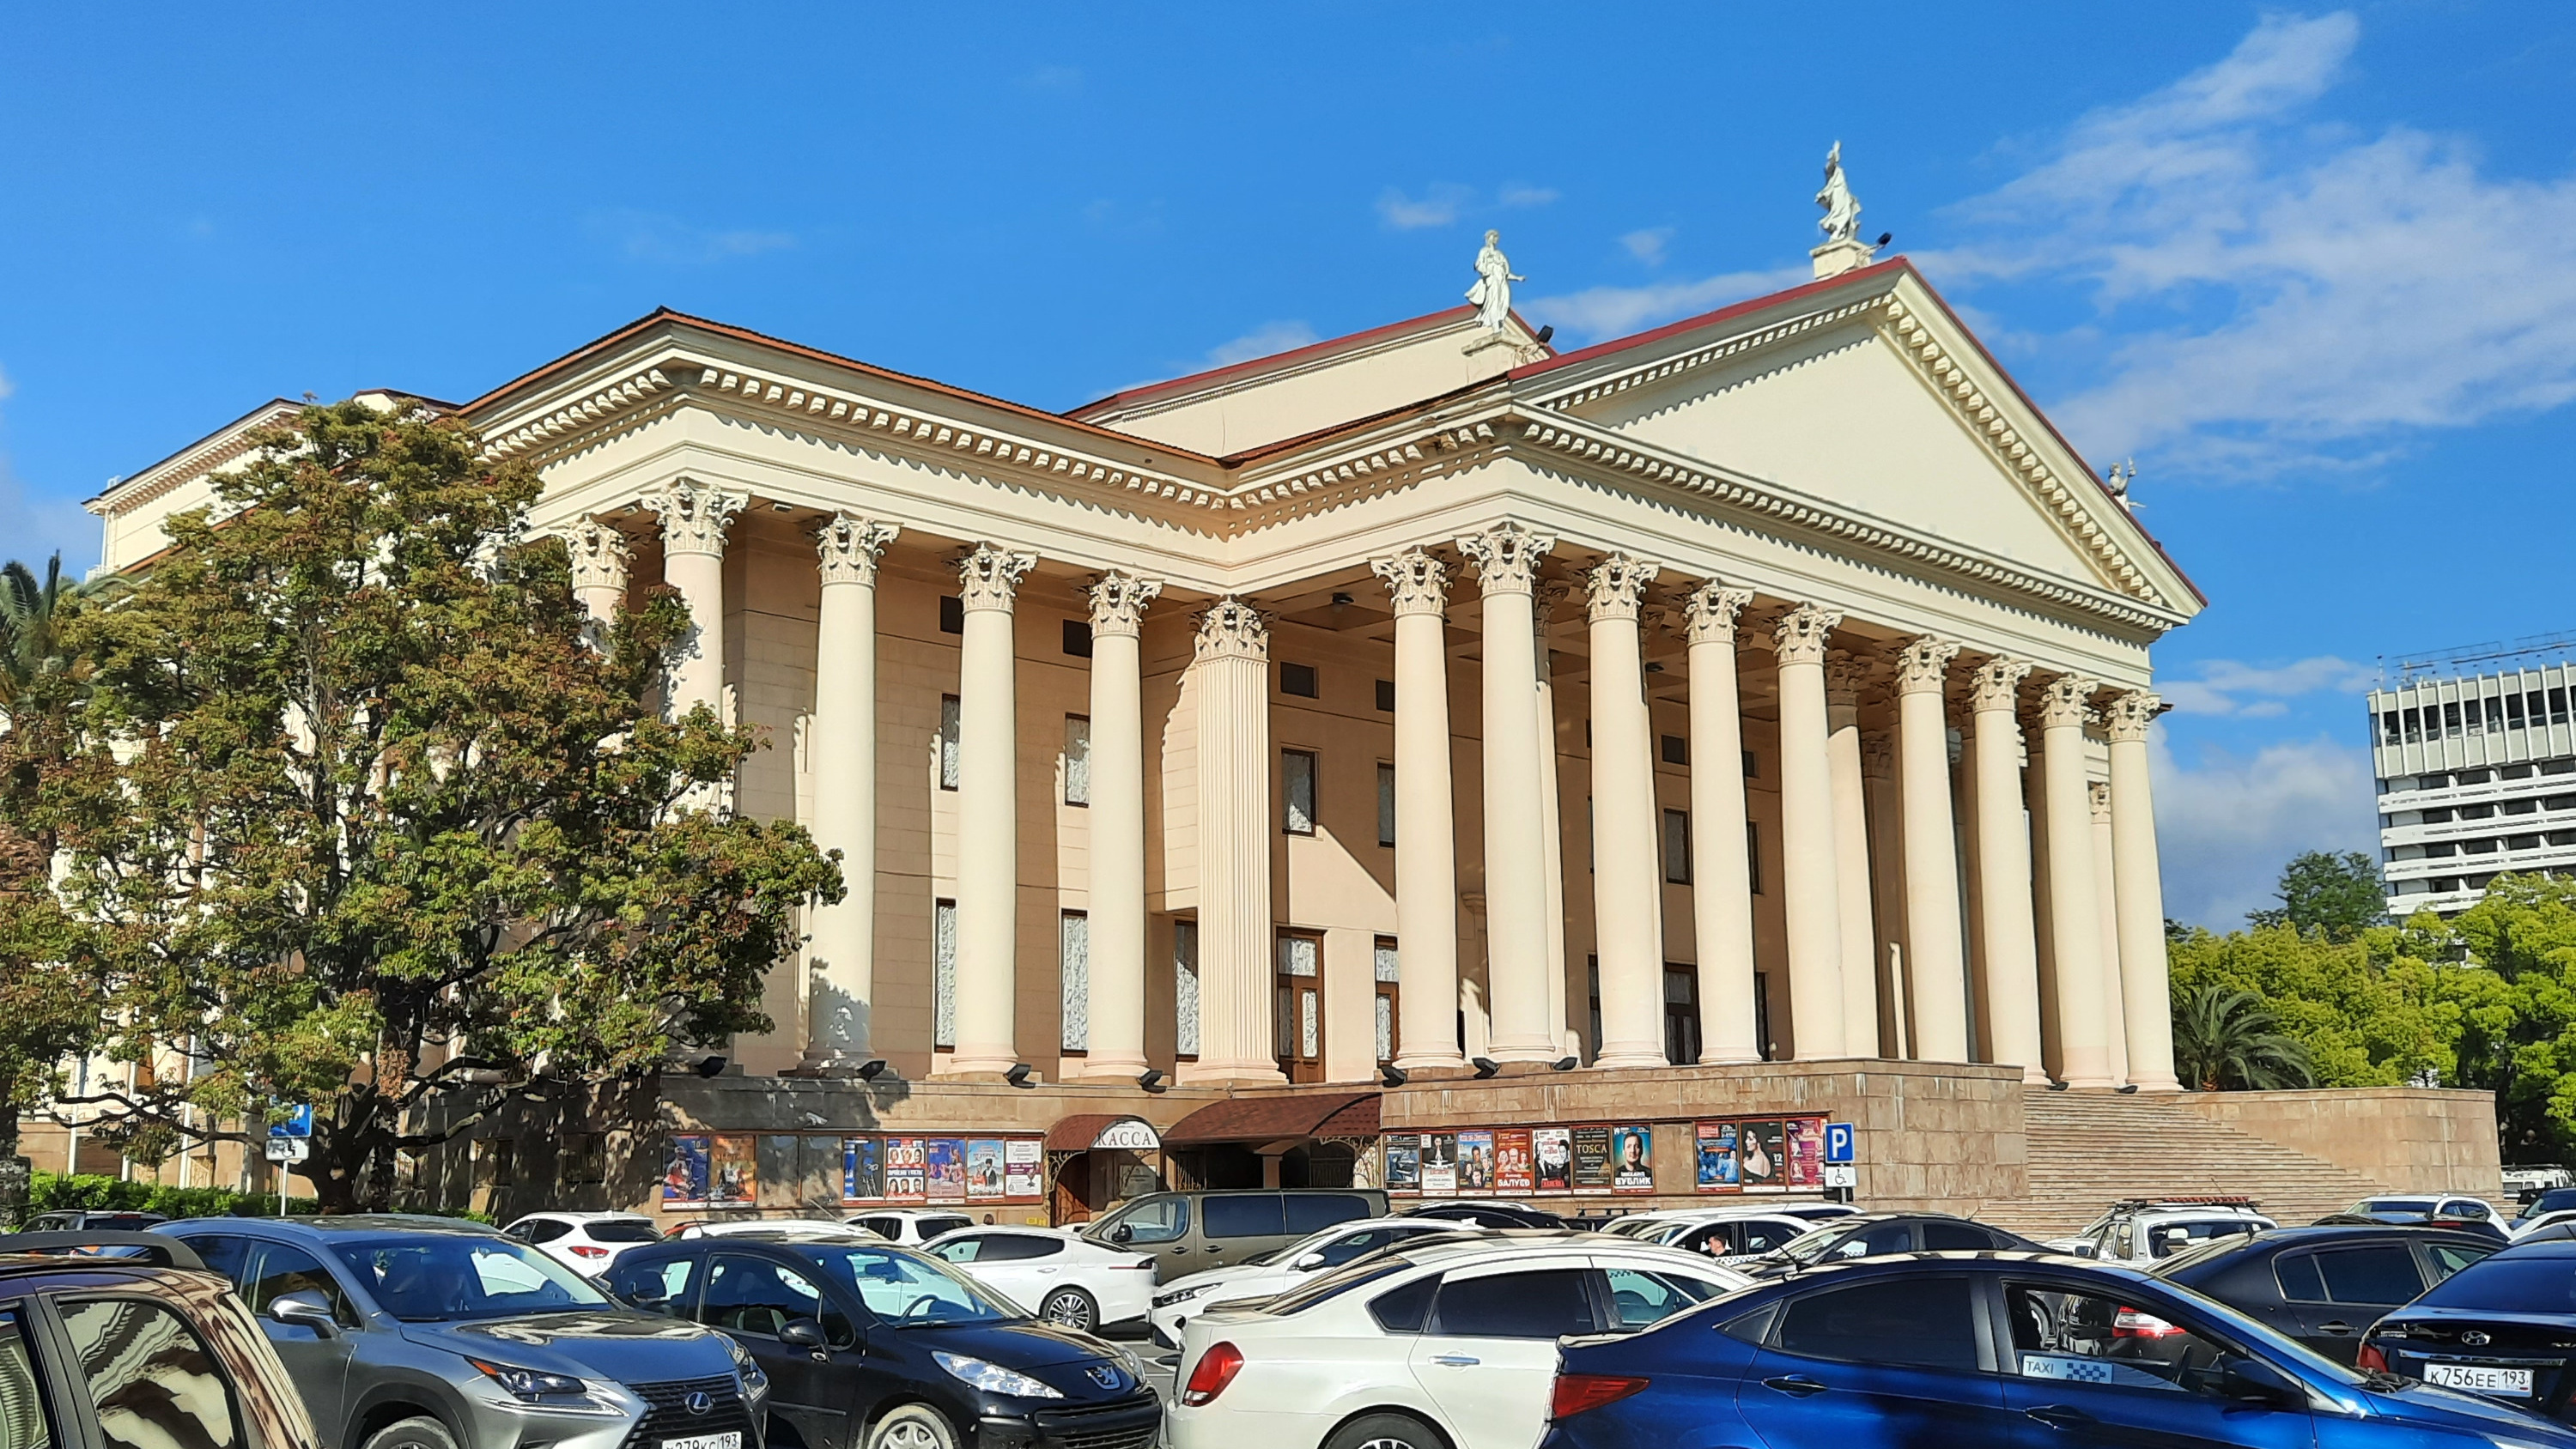 ФАС остановил торги на проект реставрации Зимнего театра в Сочи из-за жалобы на завышение цены контракта